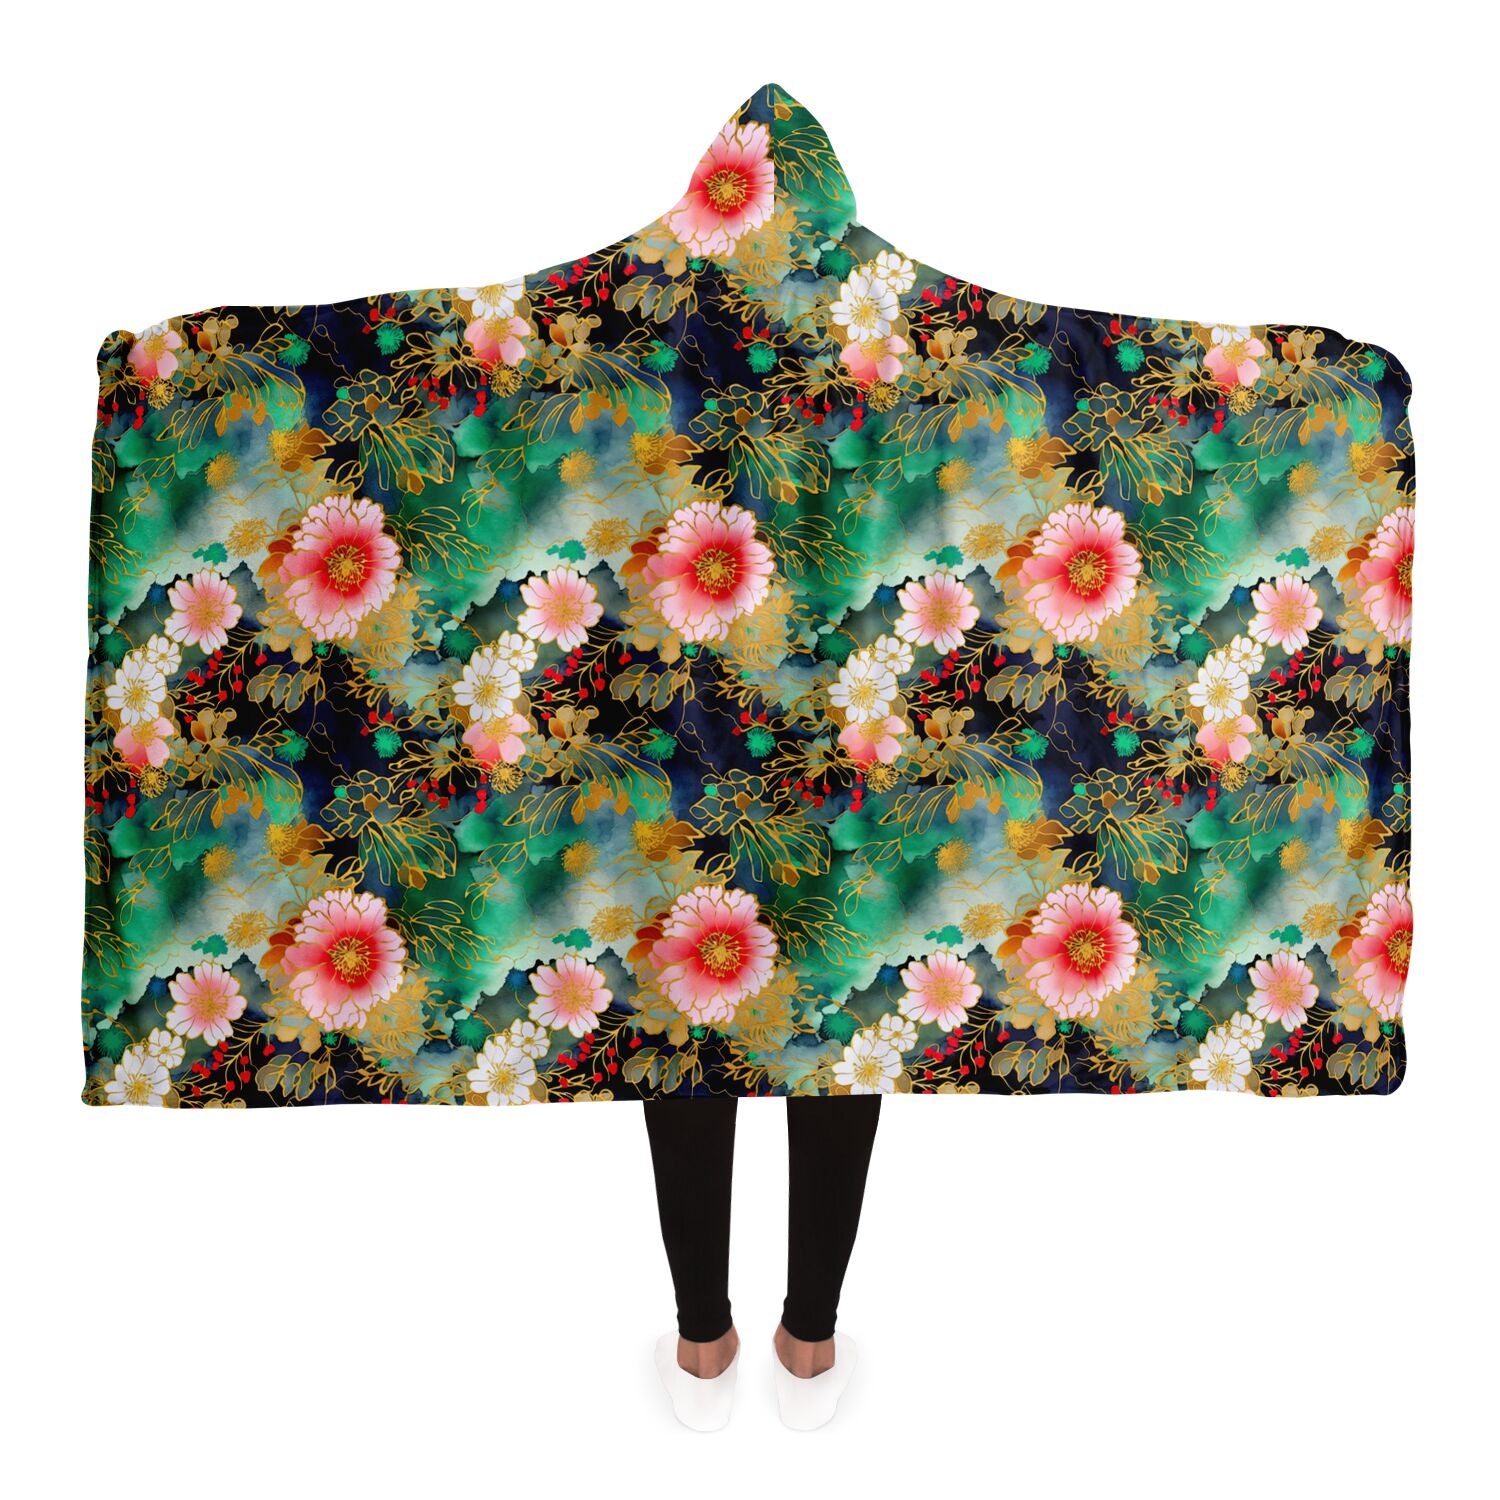 Japanese floral art hoodie blanket by Elivior